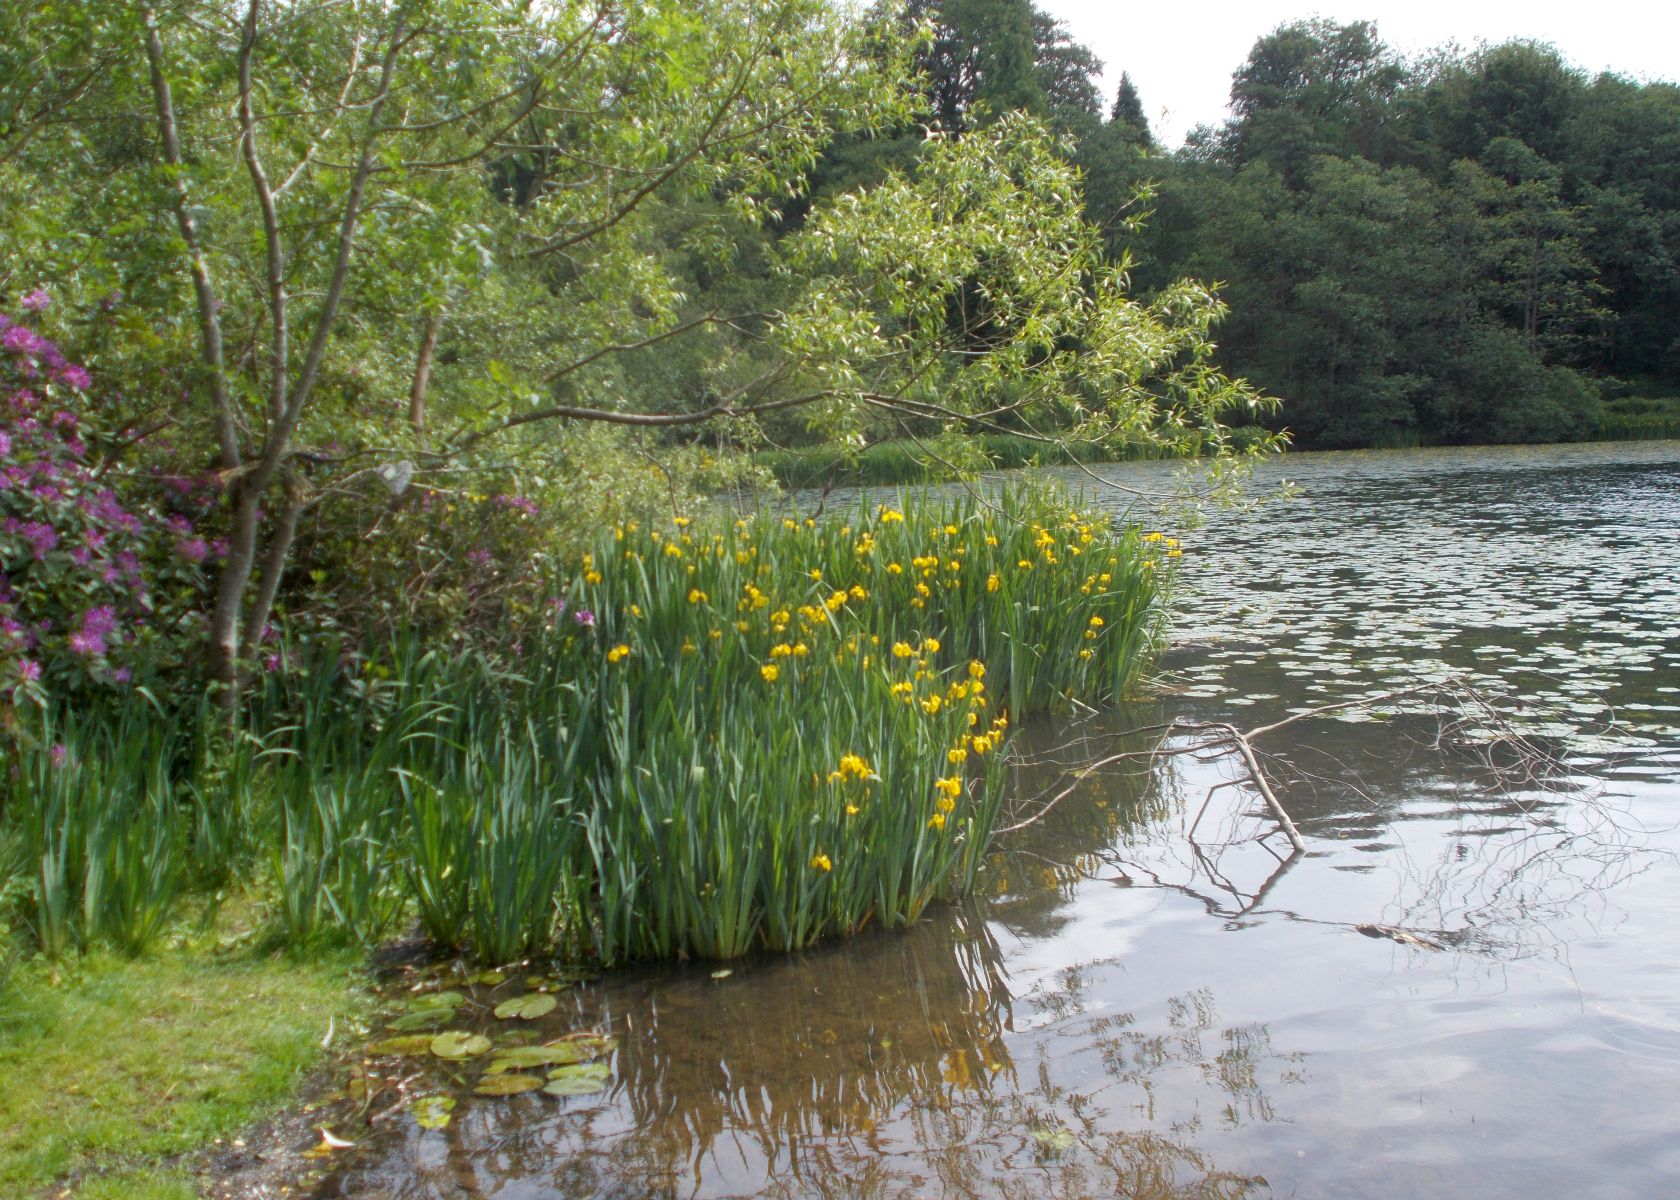 Iris at Kilmardinny Loch in Bearsden